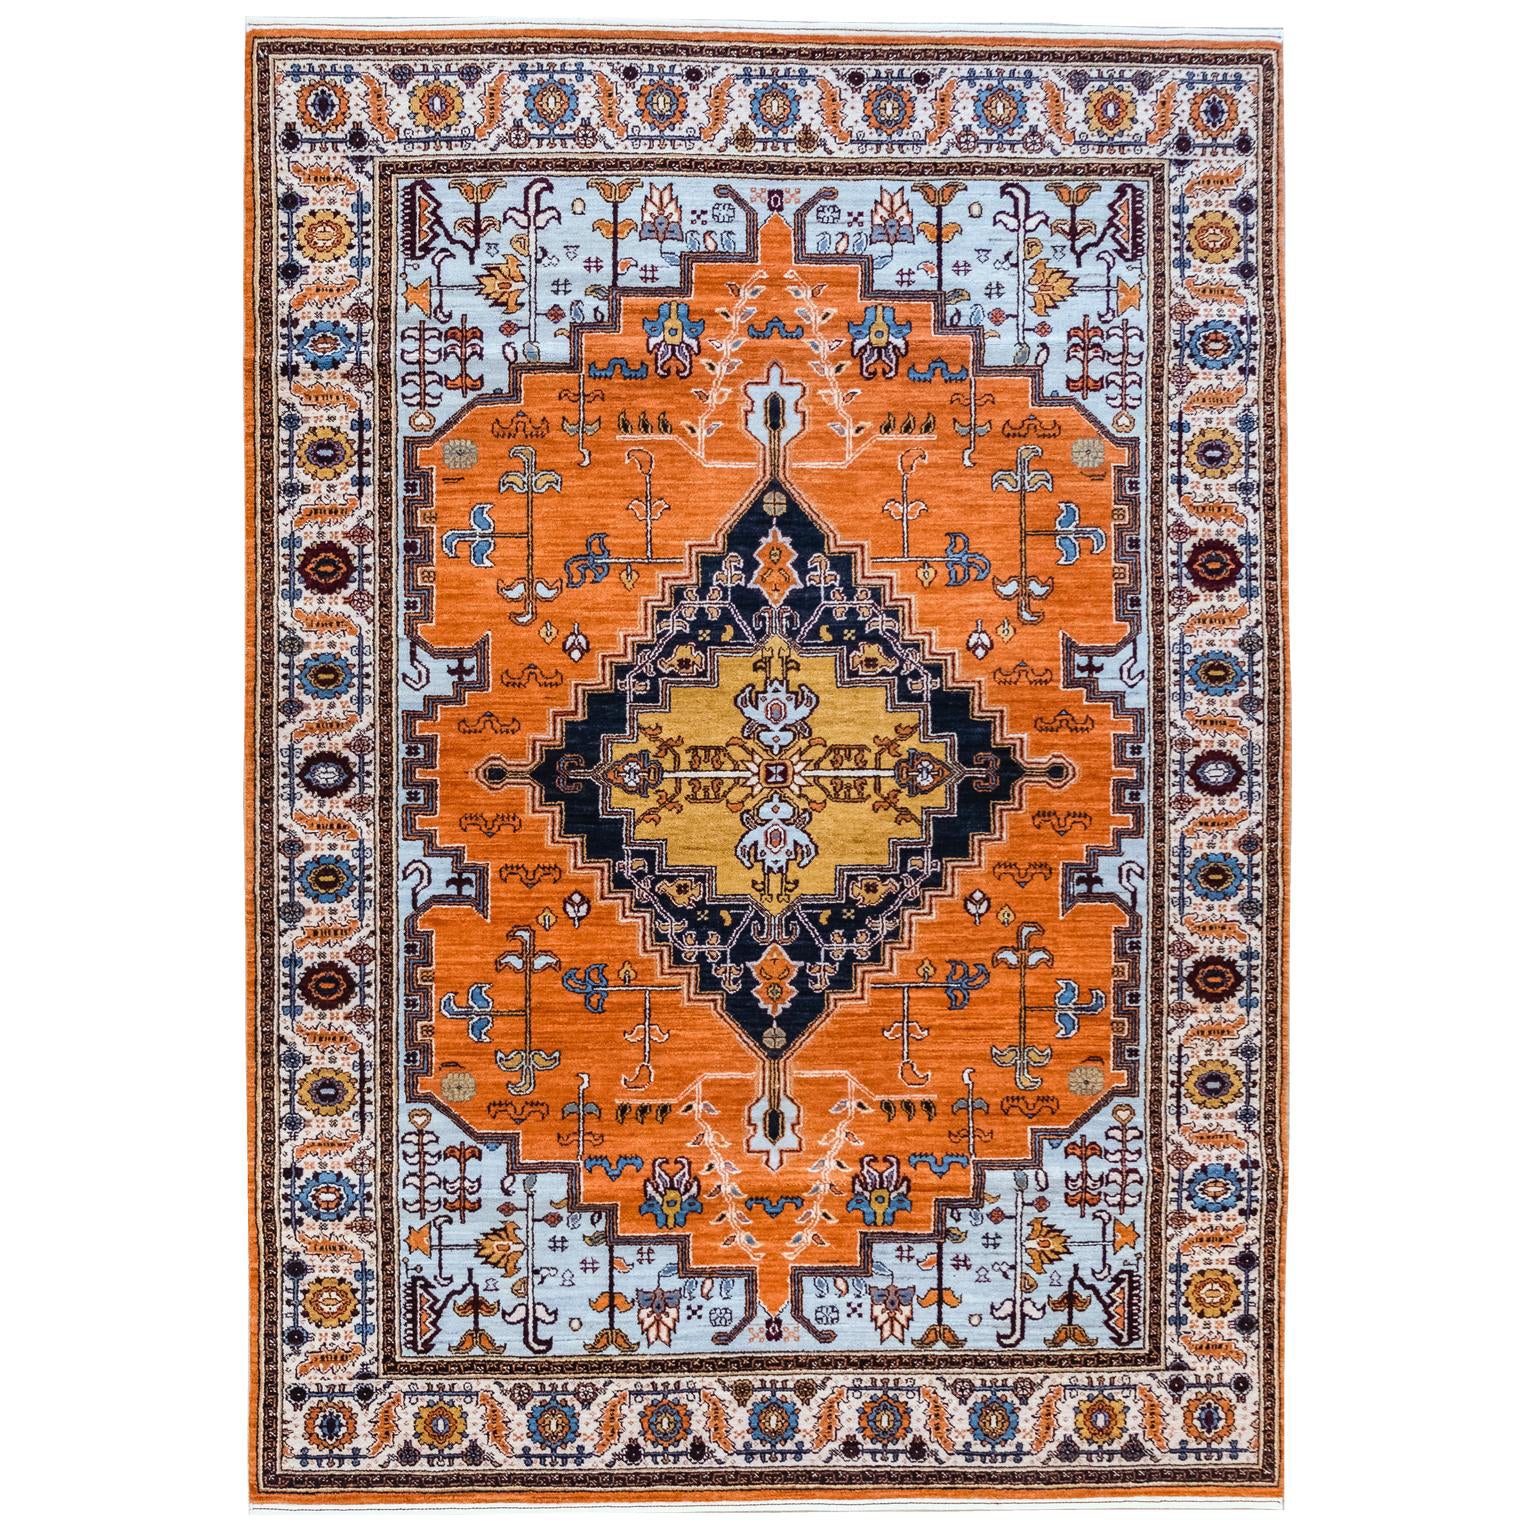 Tapis persan transitionnel orange, bleu et crème en pure laine, 5' x 7'